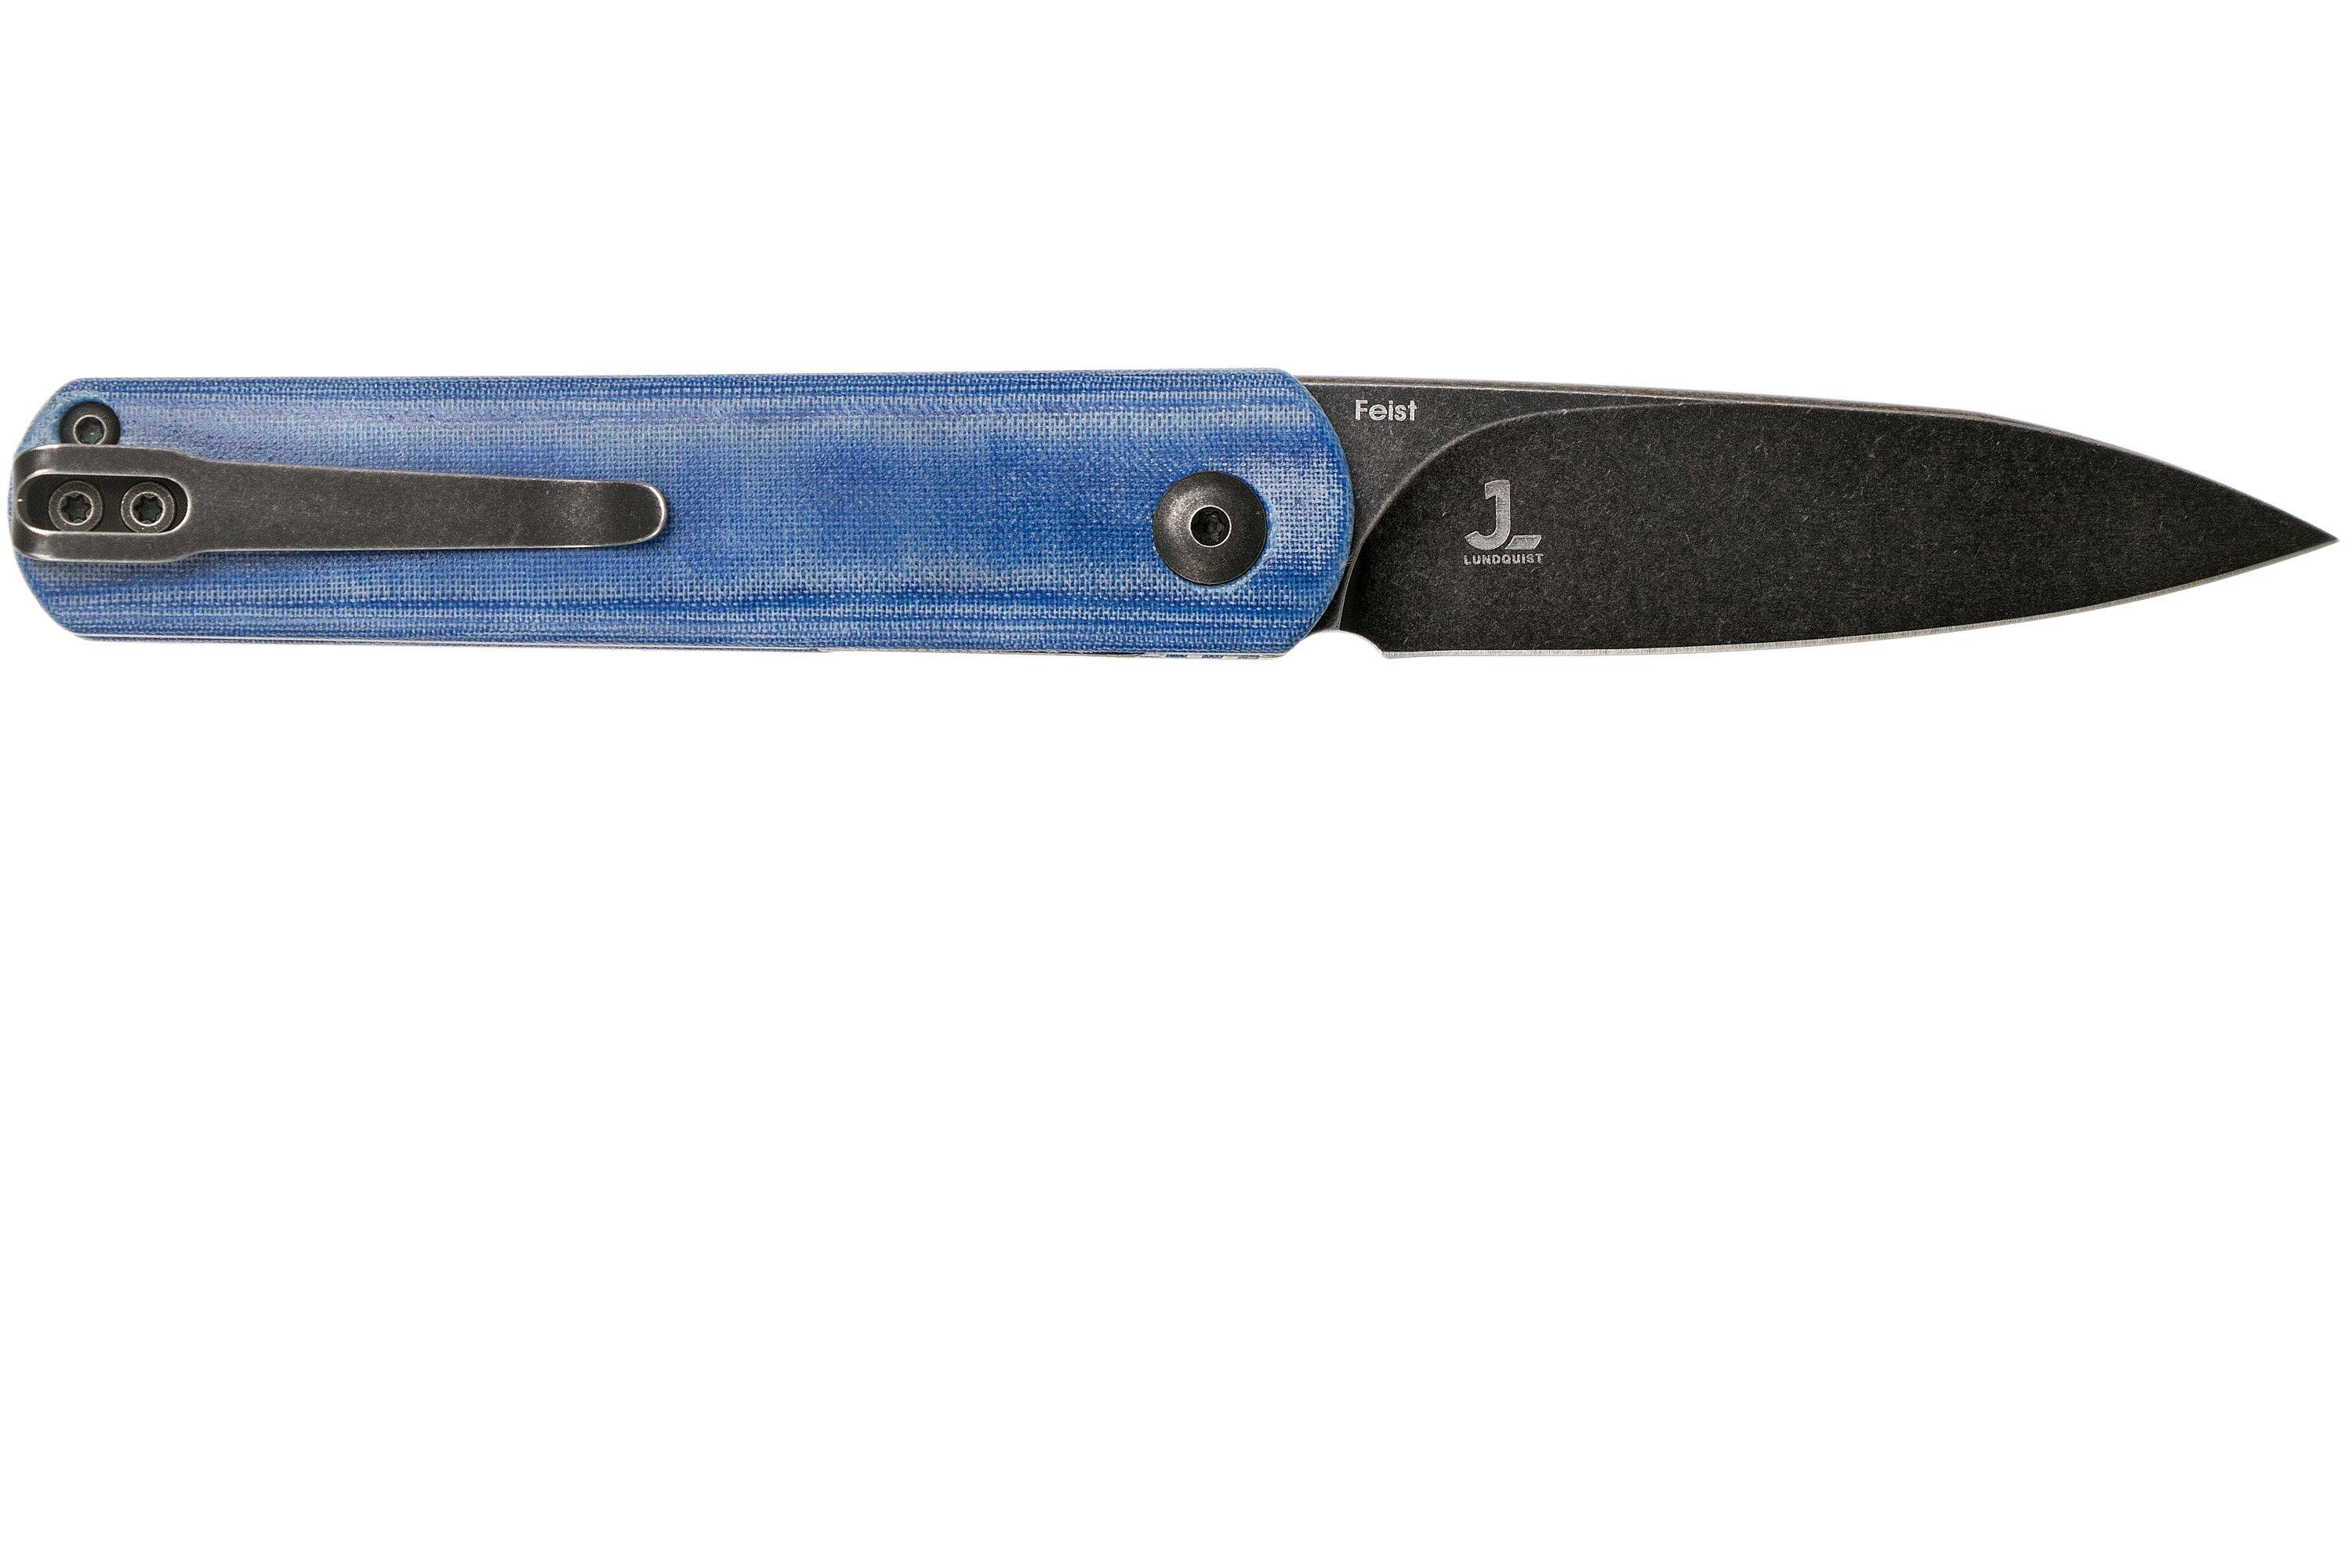 Kizer Feist V3499C2 Blackwashed 154CM, Denim Blue Micarta, pocket knife ...